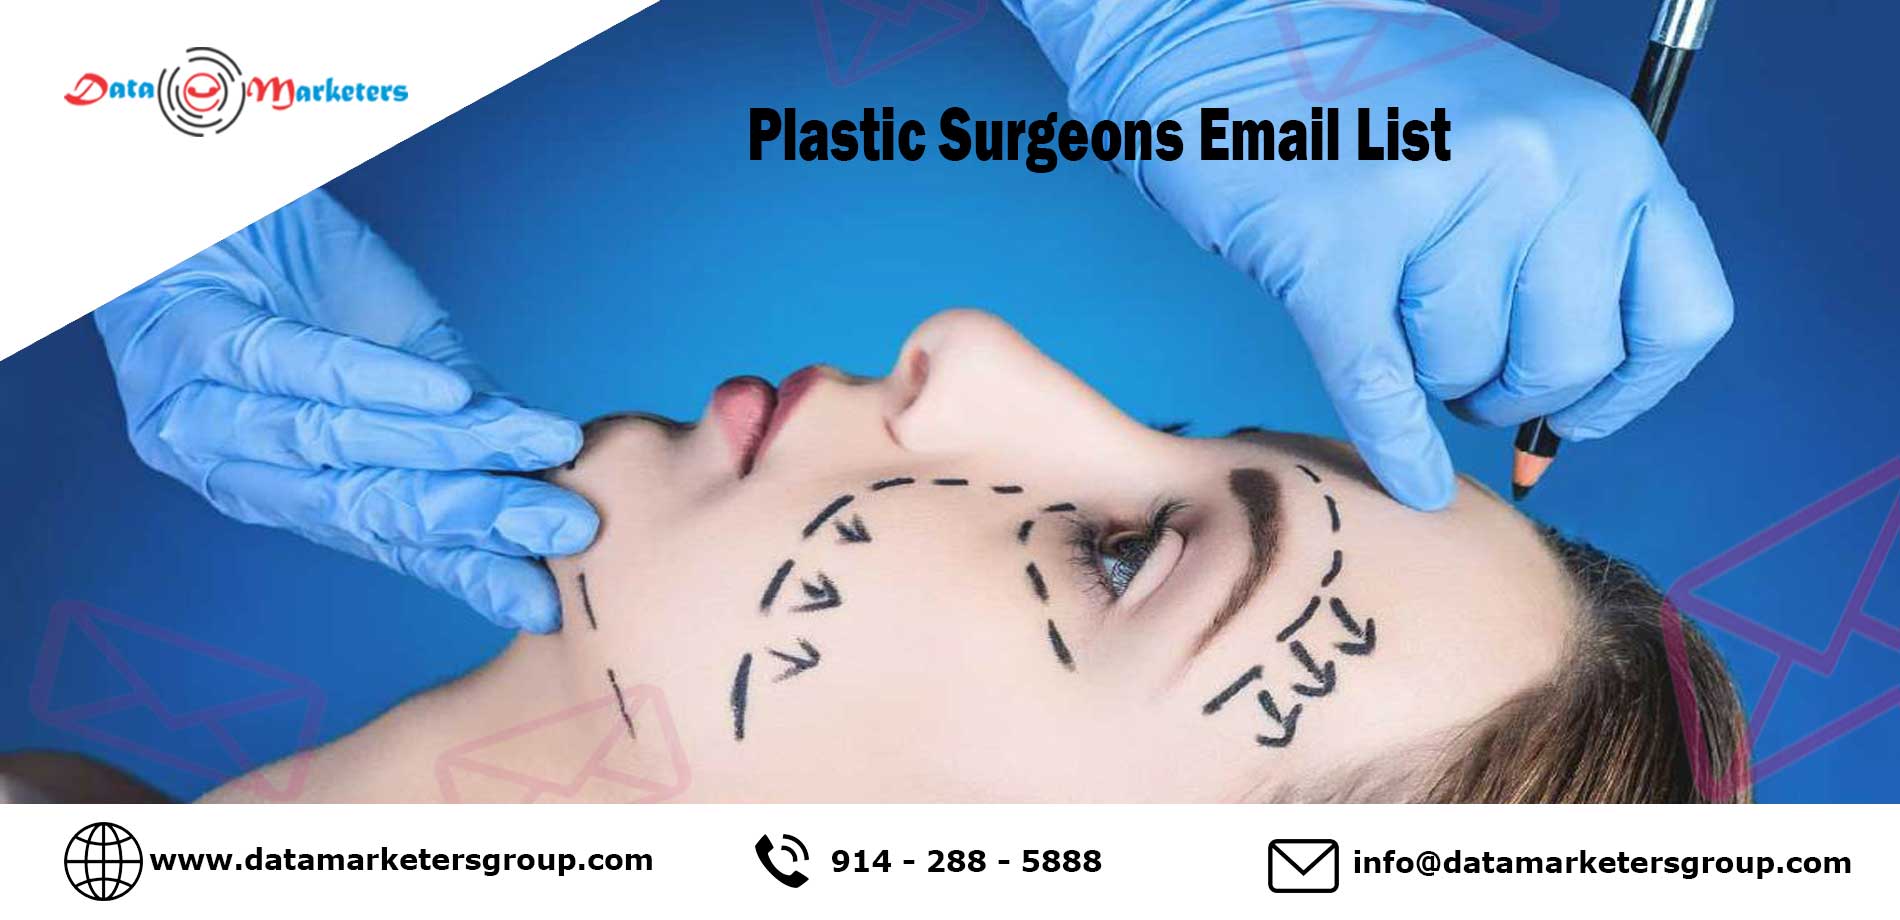 Plastic Surgeons Email List | Plastic Surgeons Marketing List